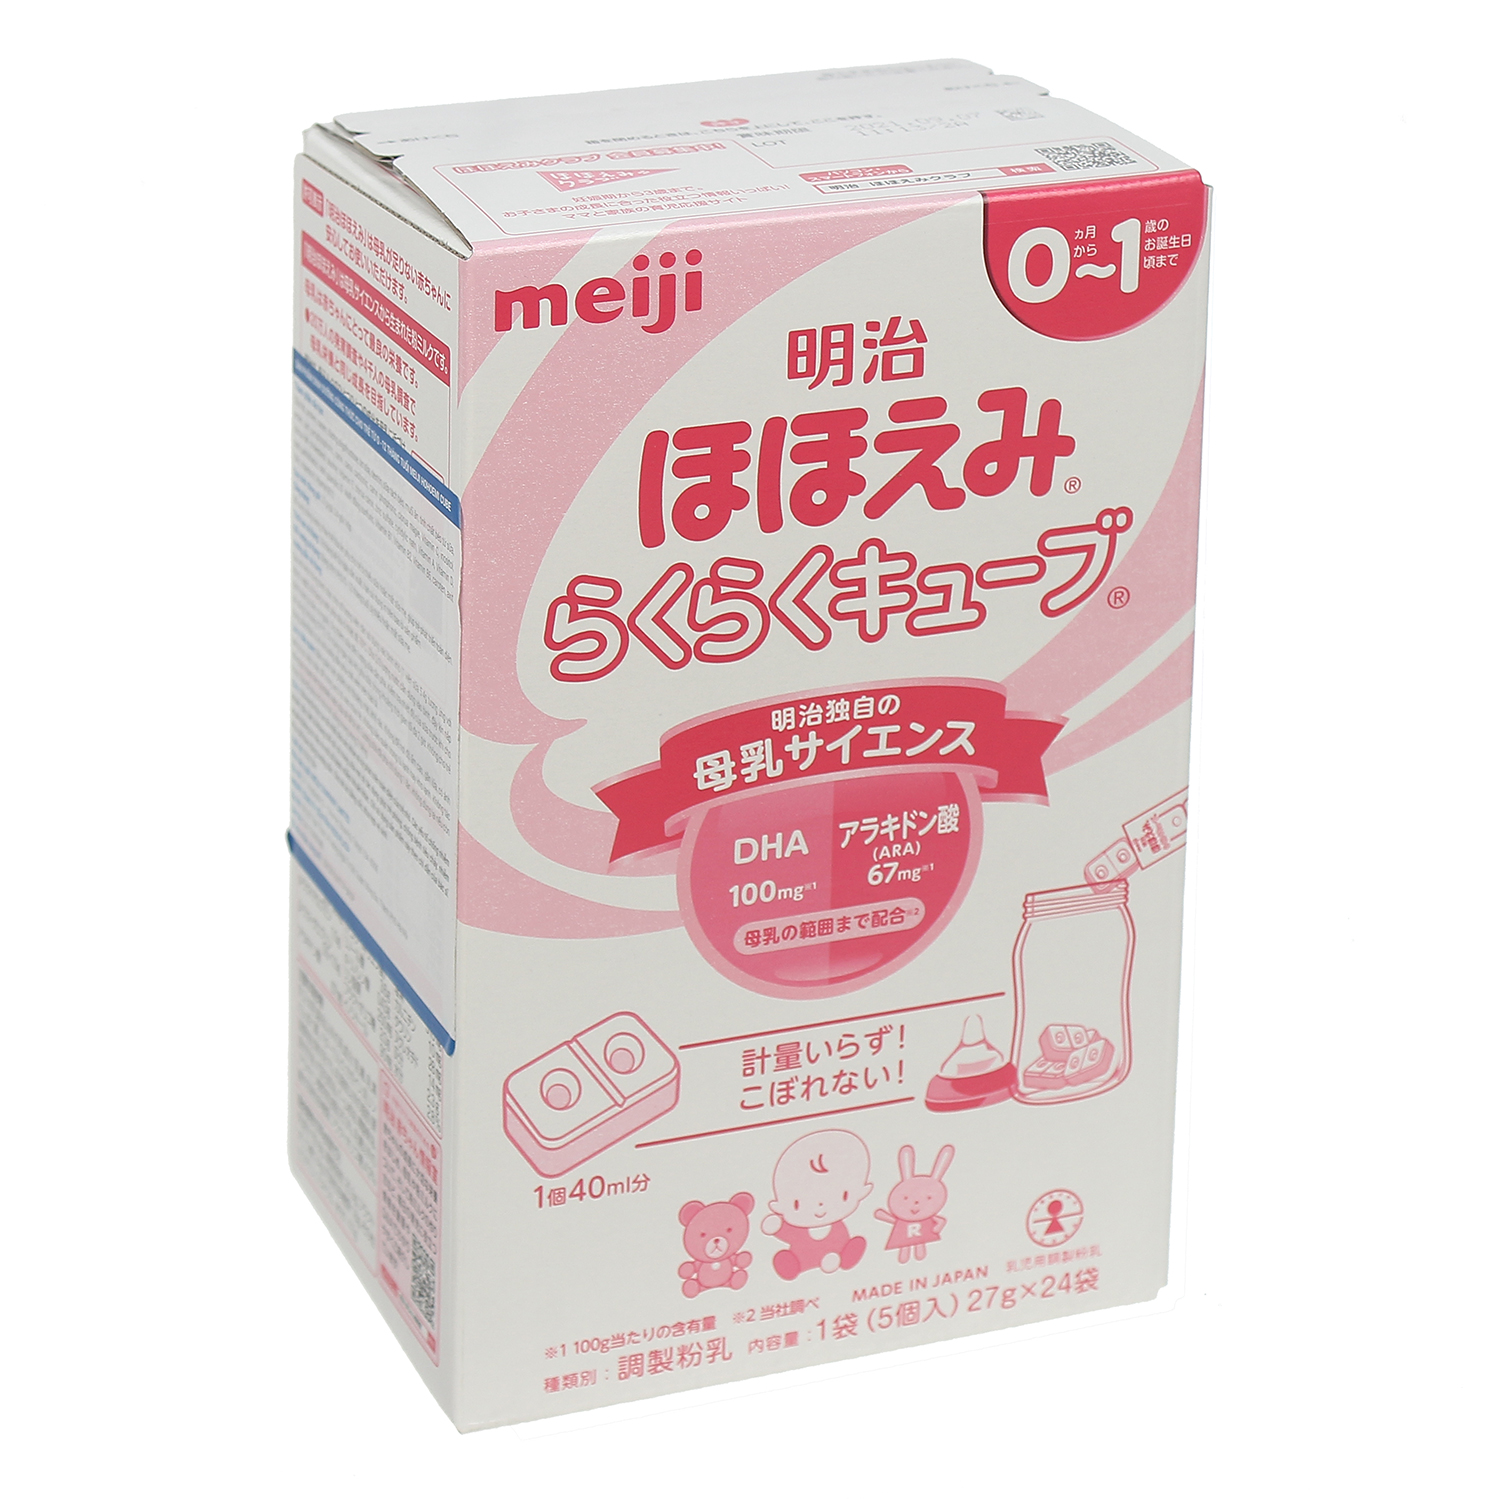 Sữa Meiji 01 nhật bản dạng viên hộp 48 túi 1296g trẻ sơ sinh đến 1 tuổi  chứa axit arachidonic ARA và DHA phù hợp với sữa mẹ 2 hộp X 24